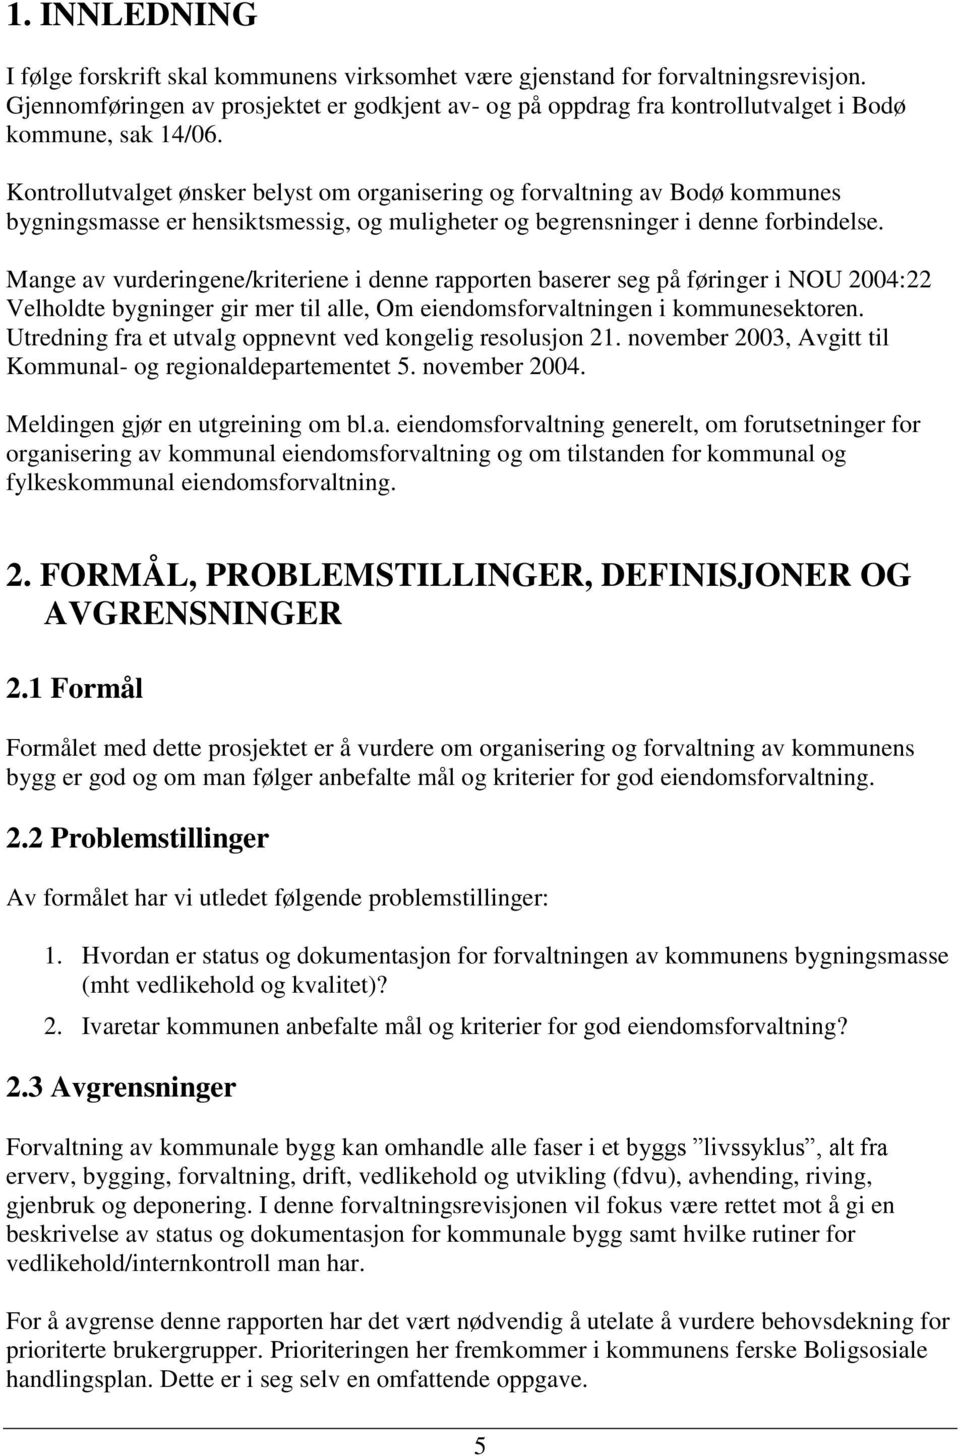 Kontrollutvalget ønsker belyst om organisering og forvaltning av Bodø kommunes bygningsmasse er hensiktsmessig, og muligheter og begrensninger i denne forbindelse.